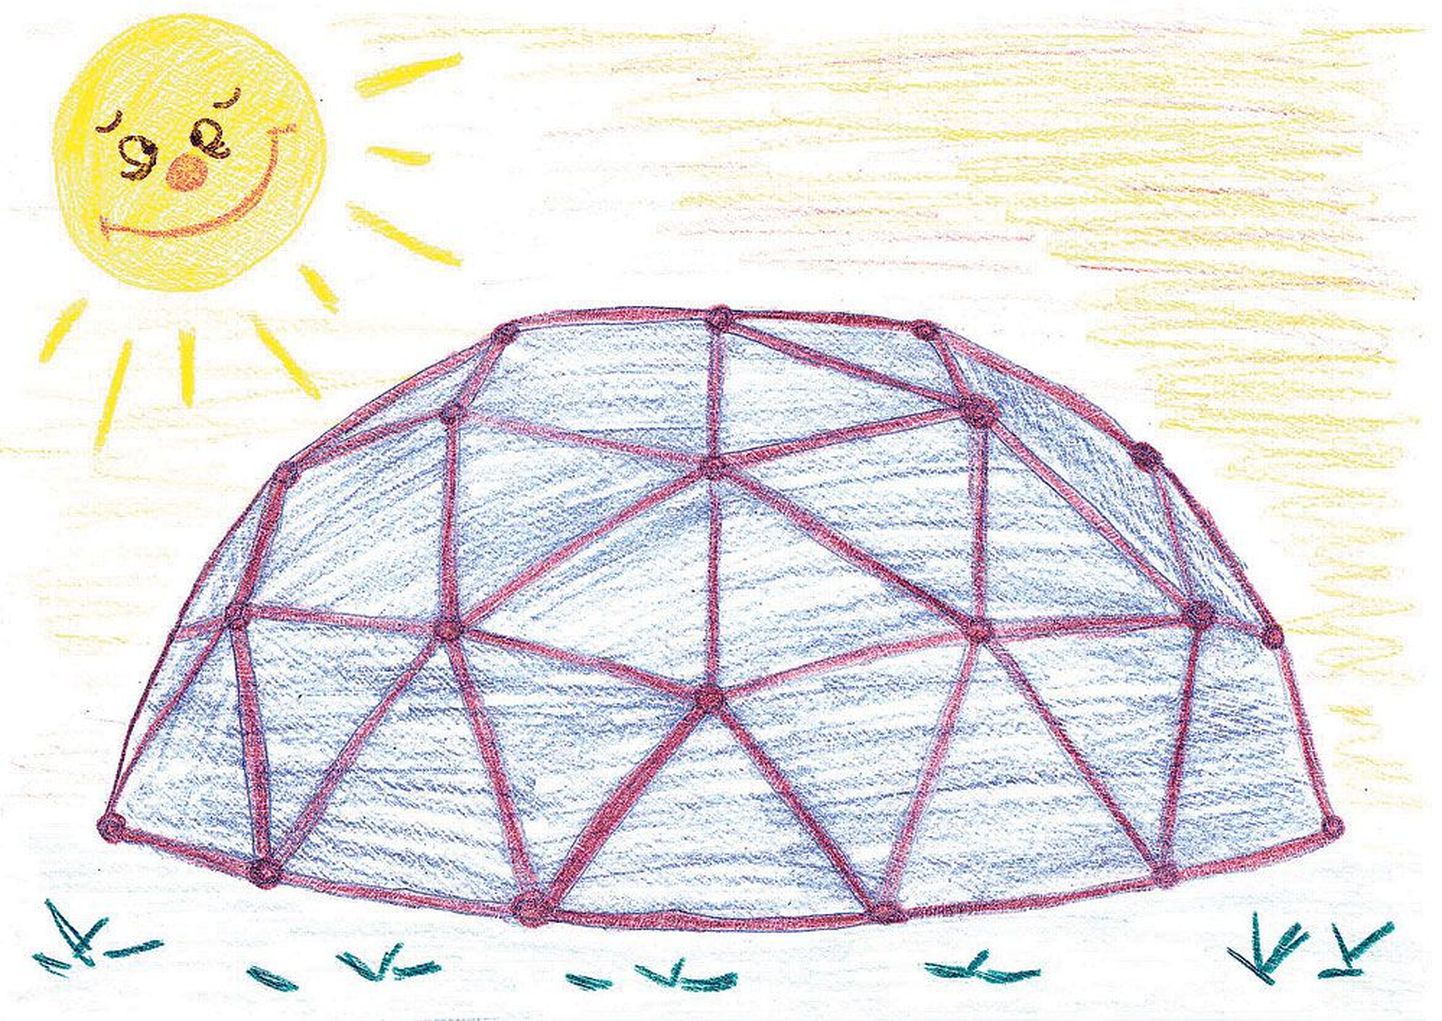 Käopesa lapsed unistavad oma triiphoonest, mis võiks juba sel suvel nende õuel olla. Nii­sugust kasvumaja eelistab üks Käopesa 15-aastane noormees.